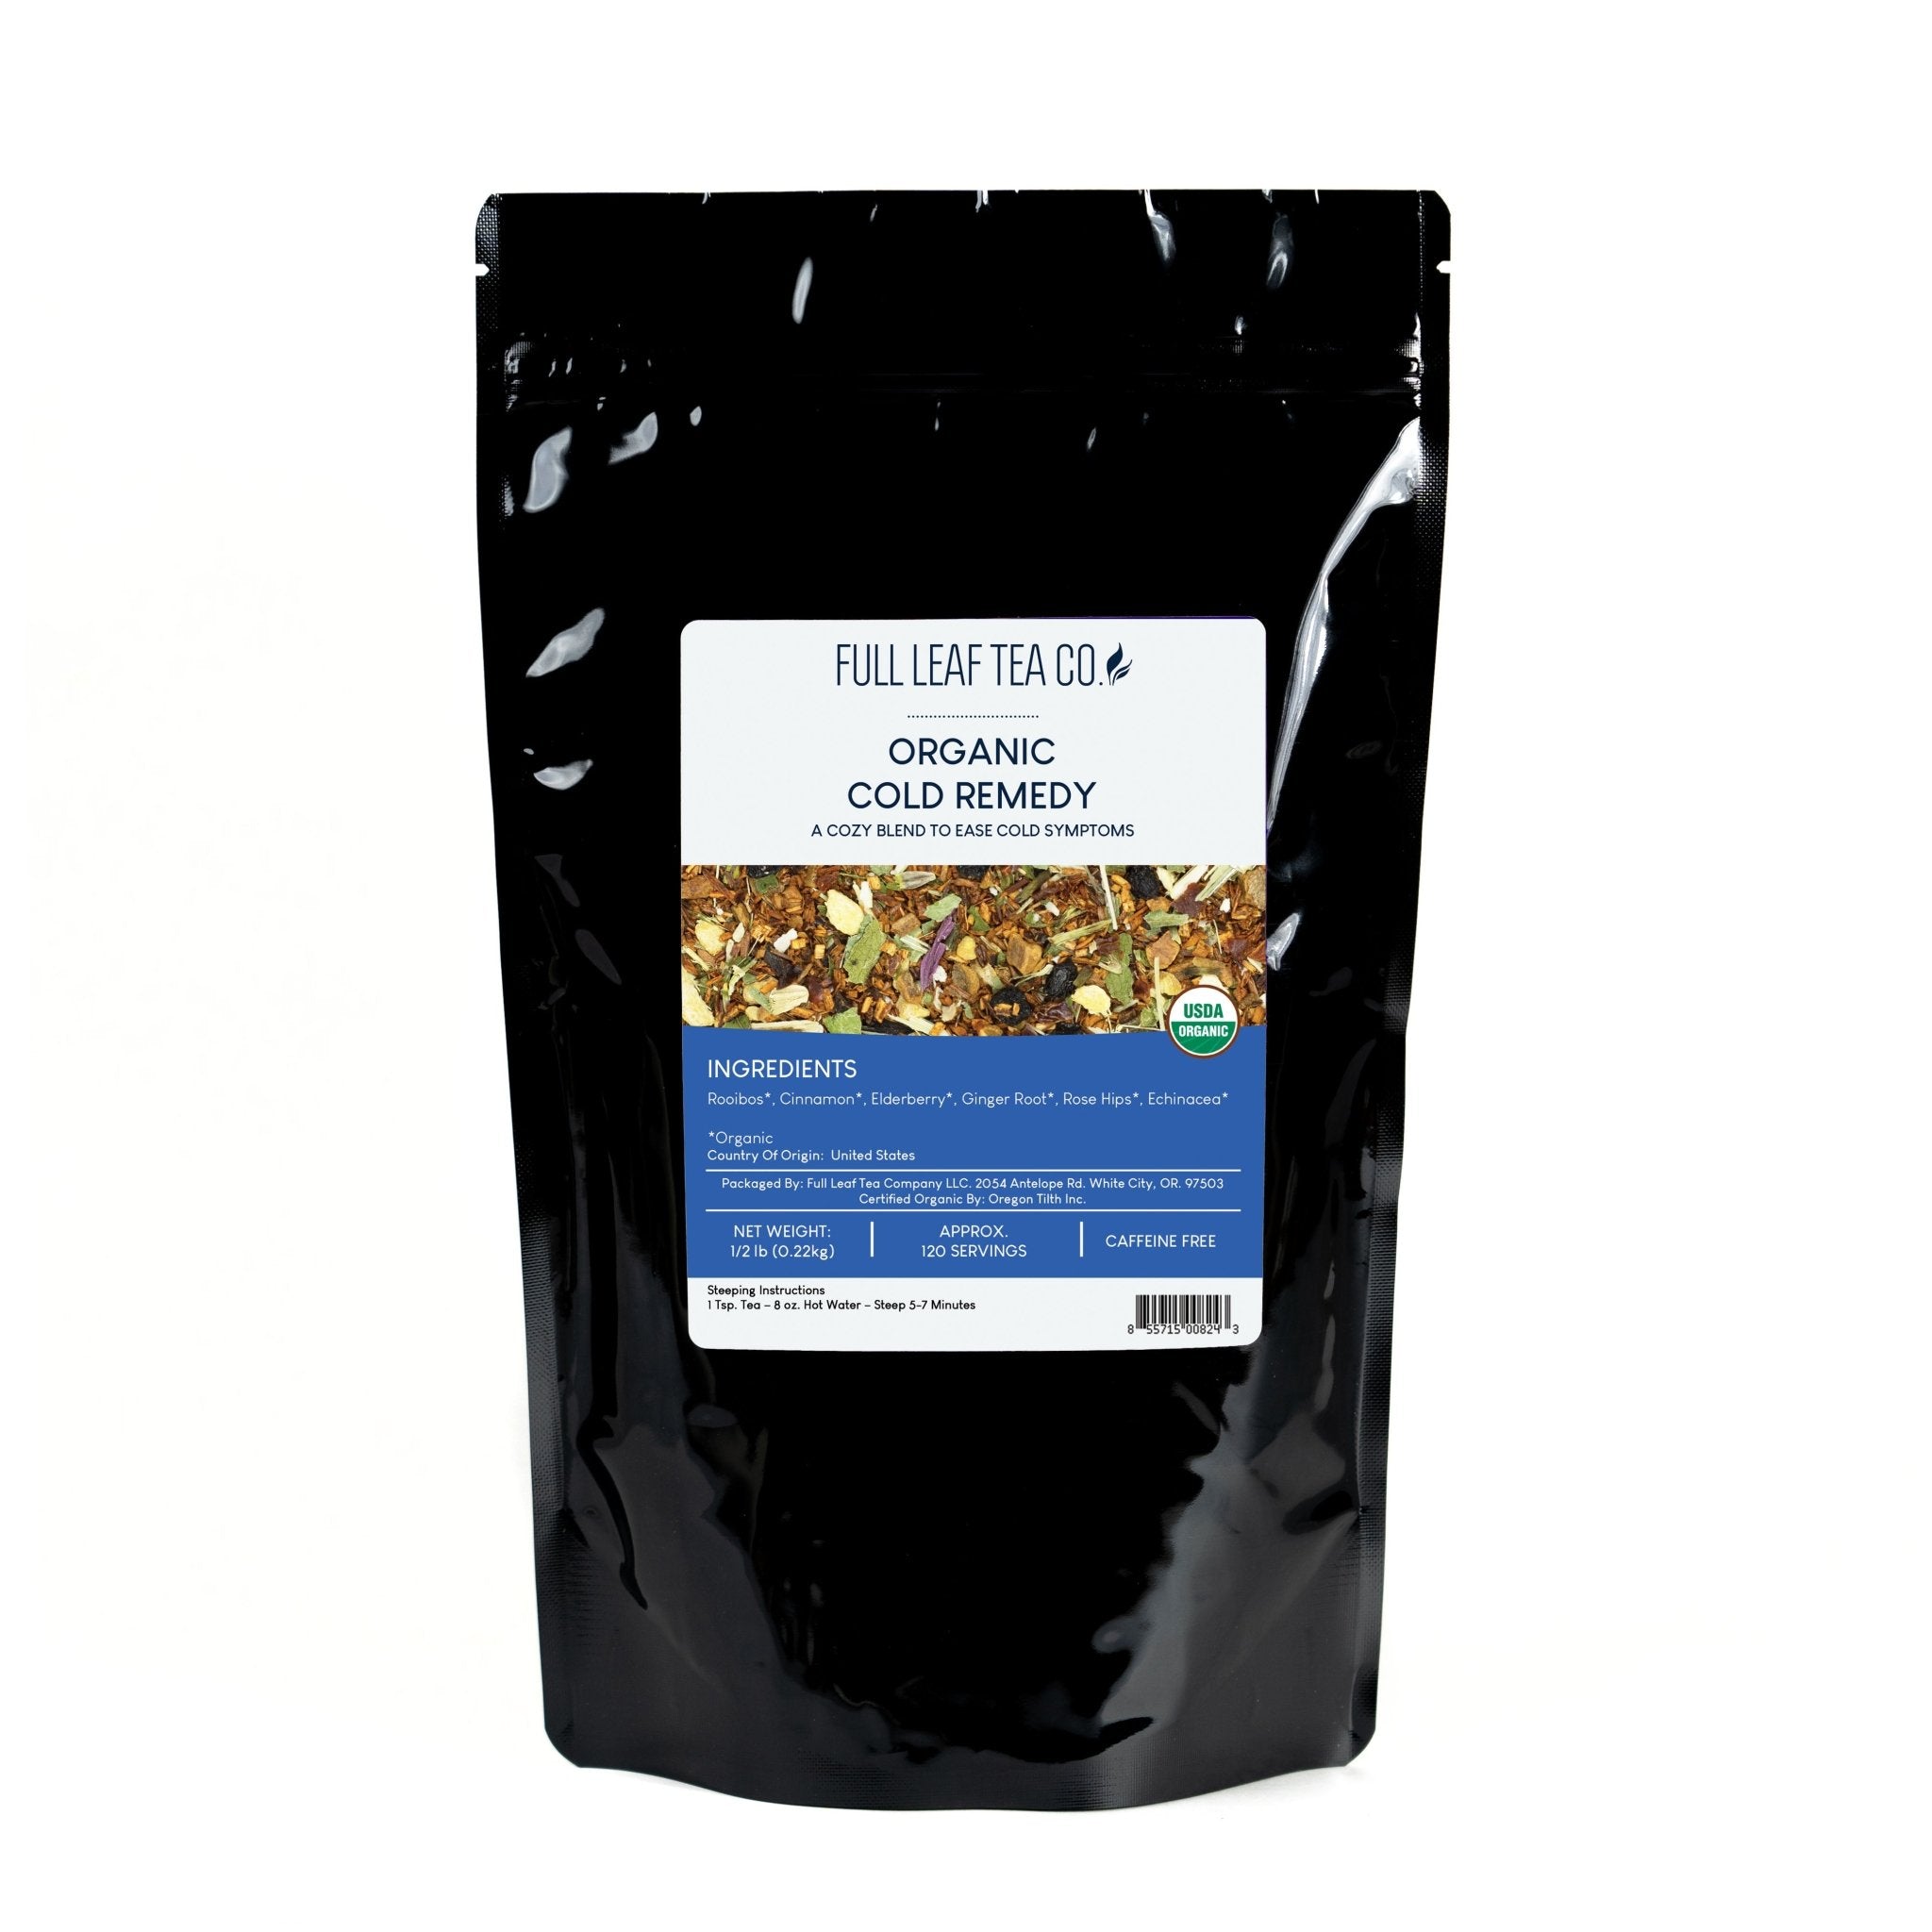 Organic Cold Remedy - Loose Leaf Tea - Full Leaf Tea Company